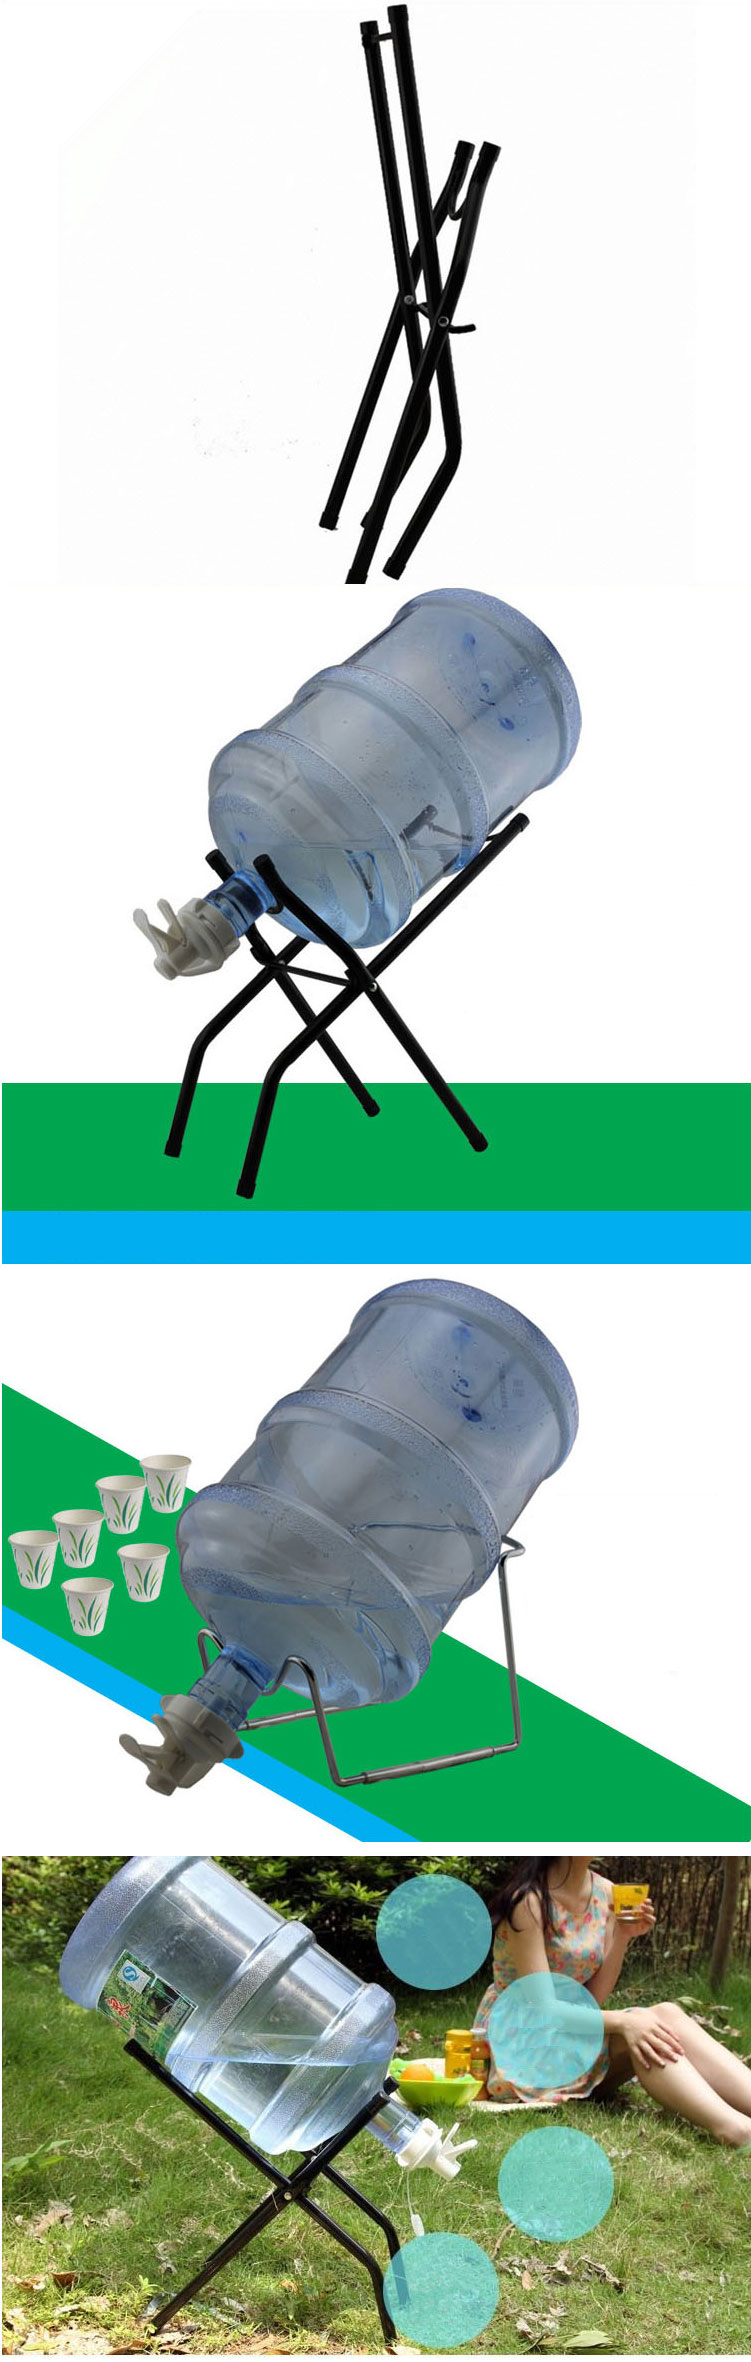 桶装水压水器 吸水器 折叠支架 饮水机压水泵 抽水器矿泉大桶水倒置吸抽 倒置折叠钢架 。